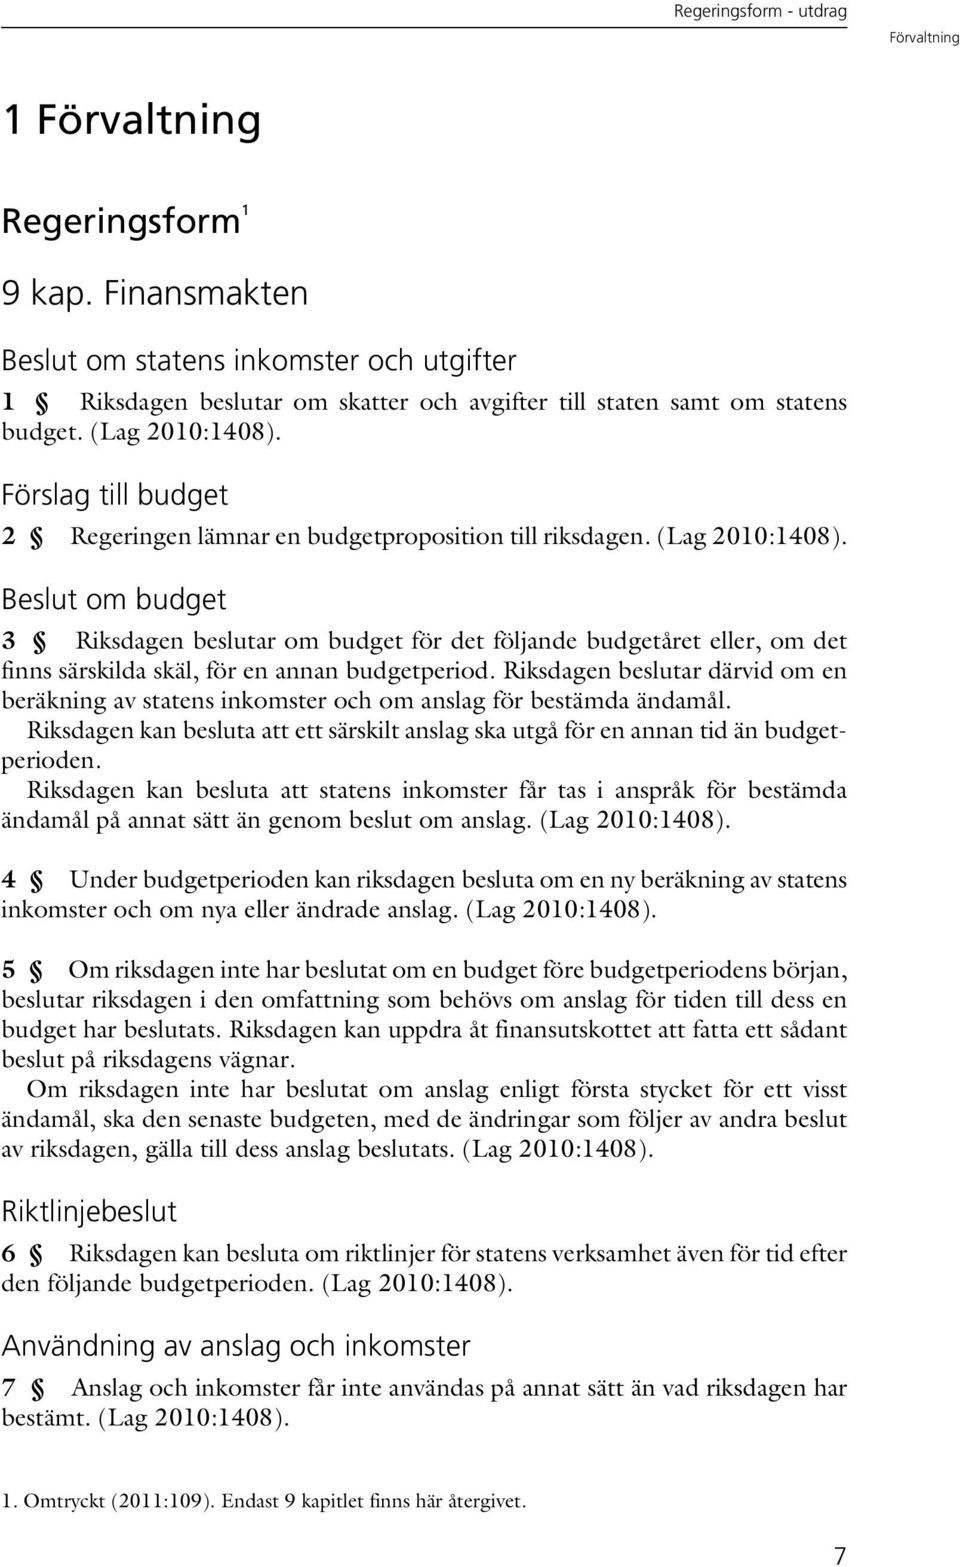 Förslag till budget 2 Regeringen lämnar en budgetproposition till riksdagen. (Lag 2010:1408).